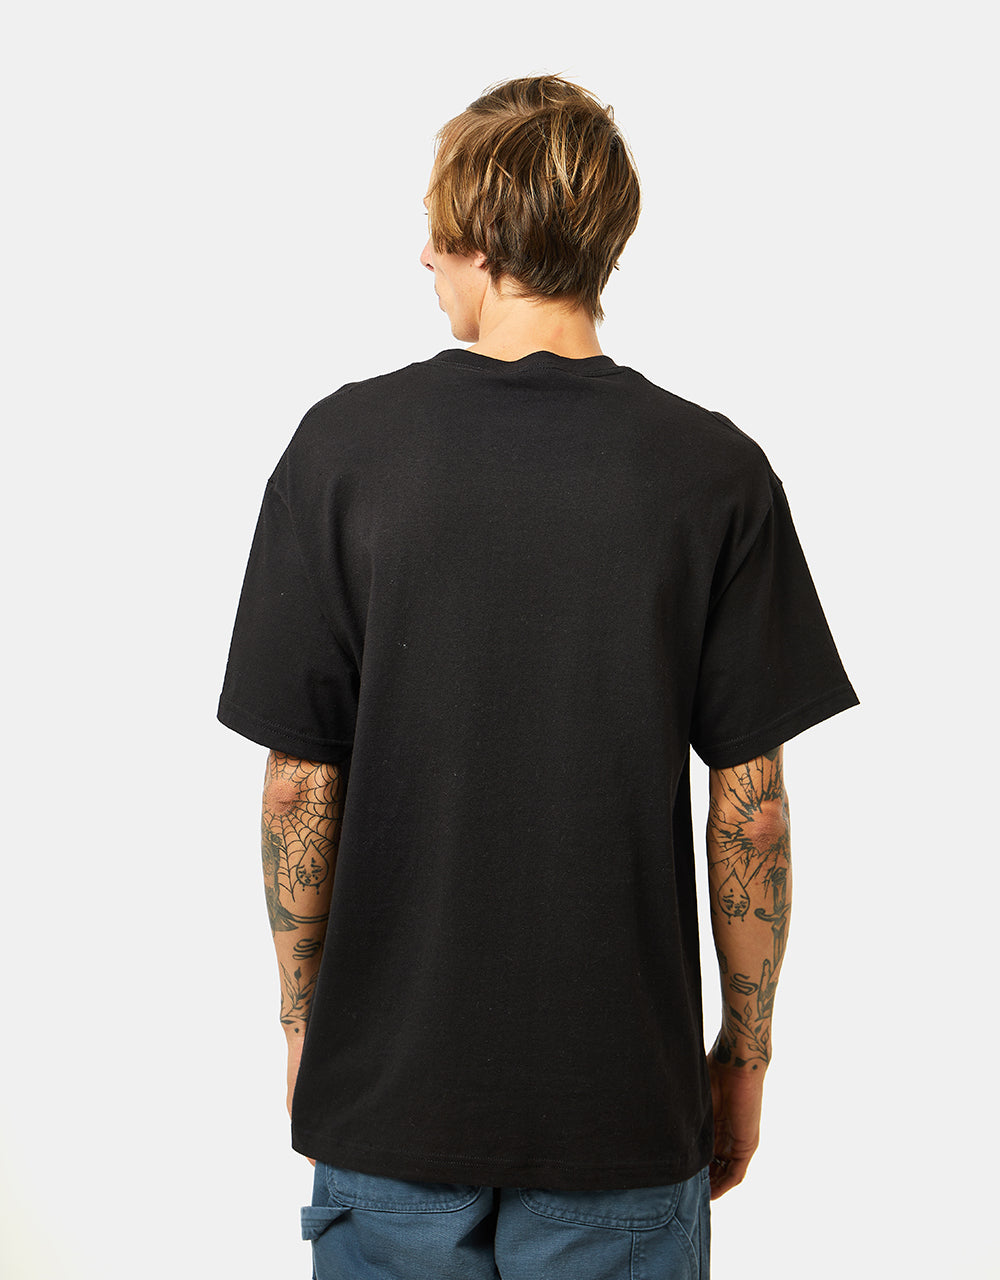 Quasi Stasis T-Shirt - Black